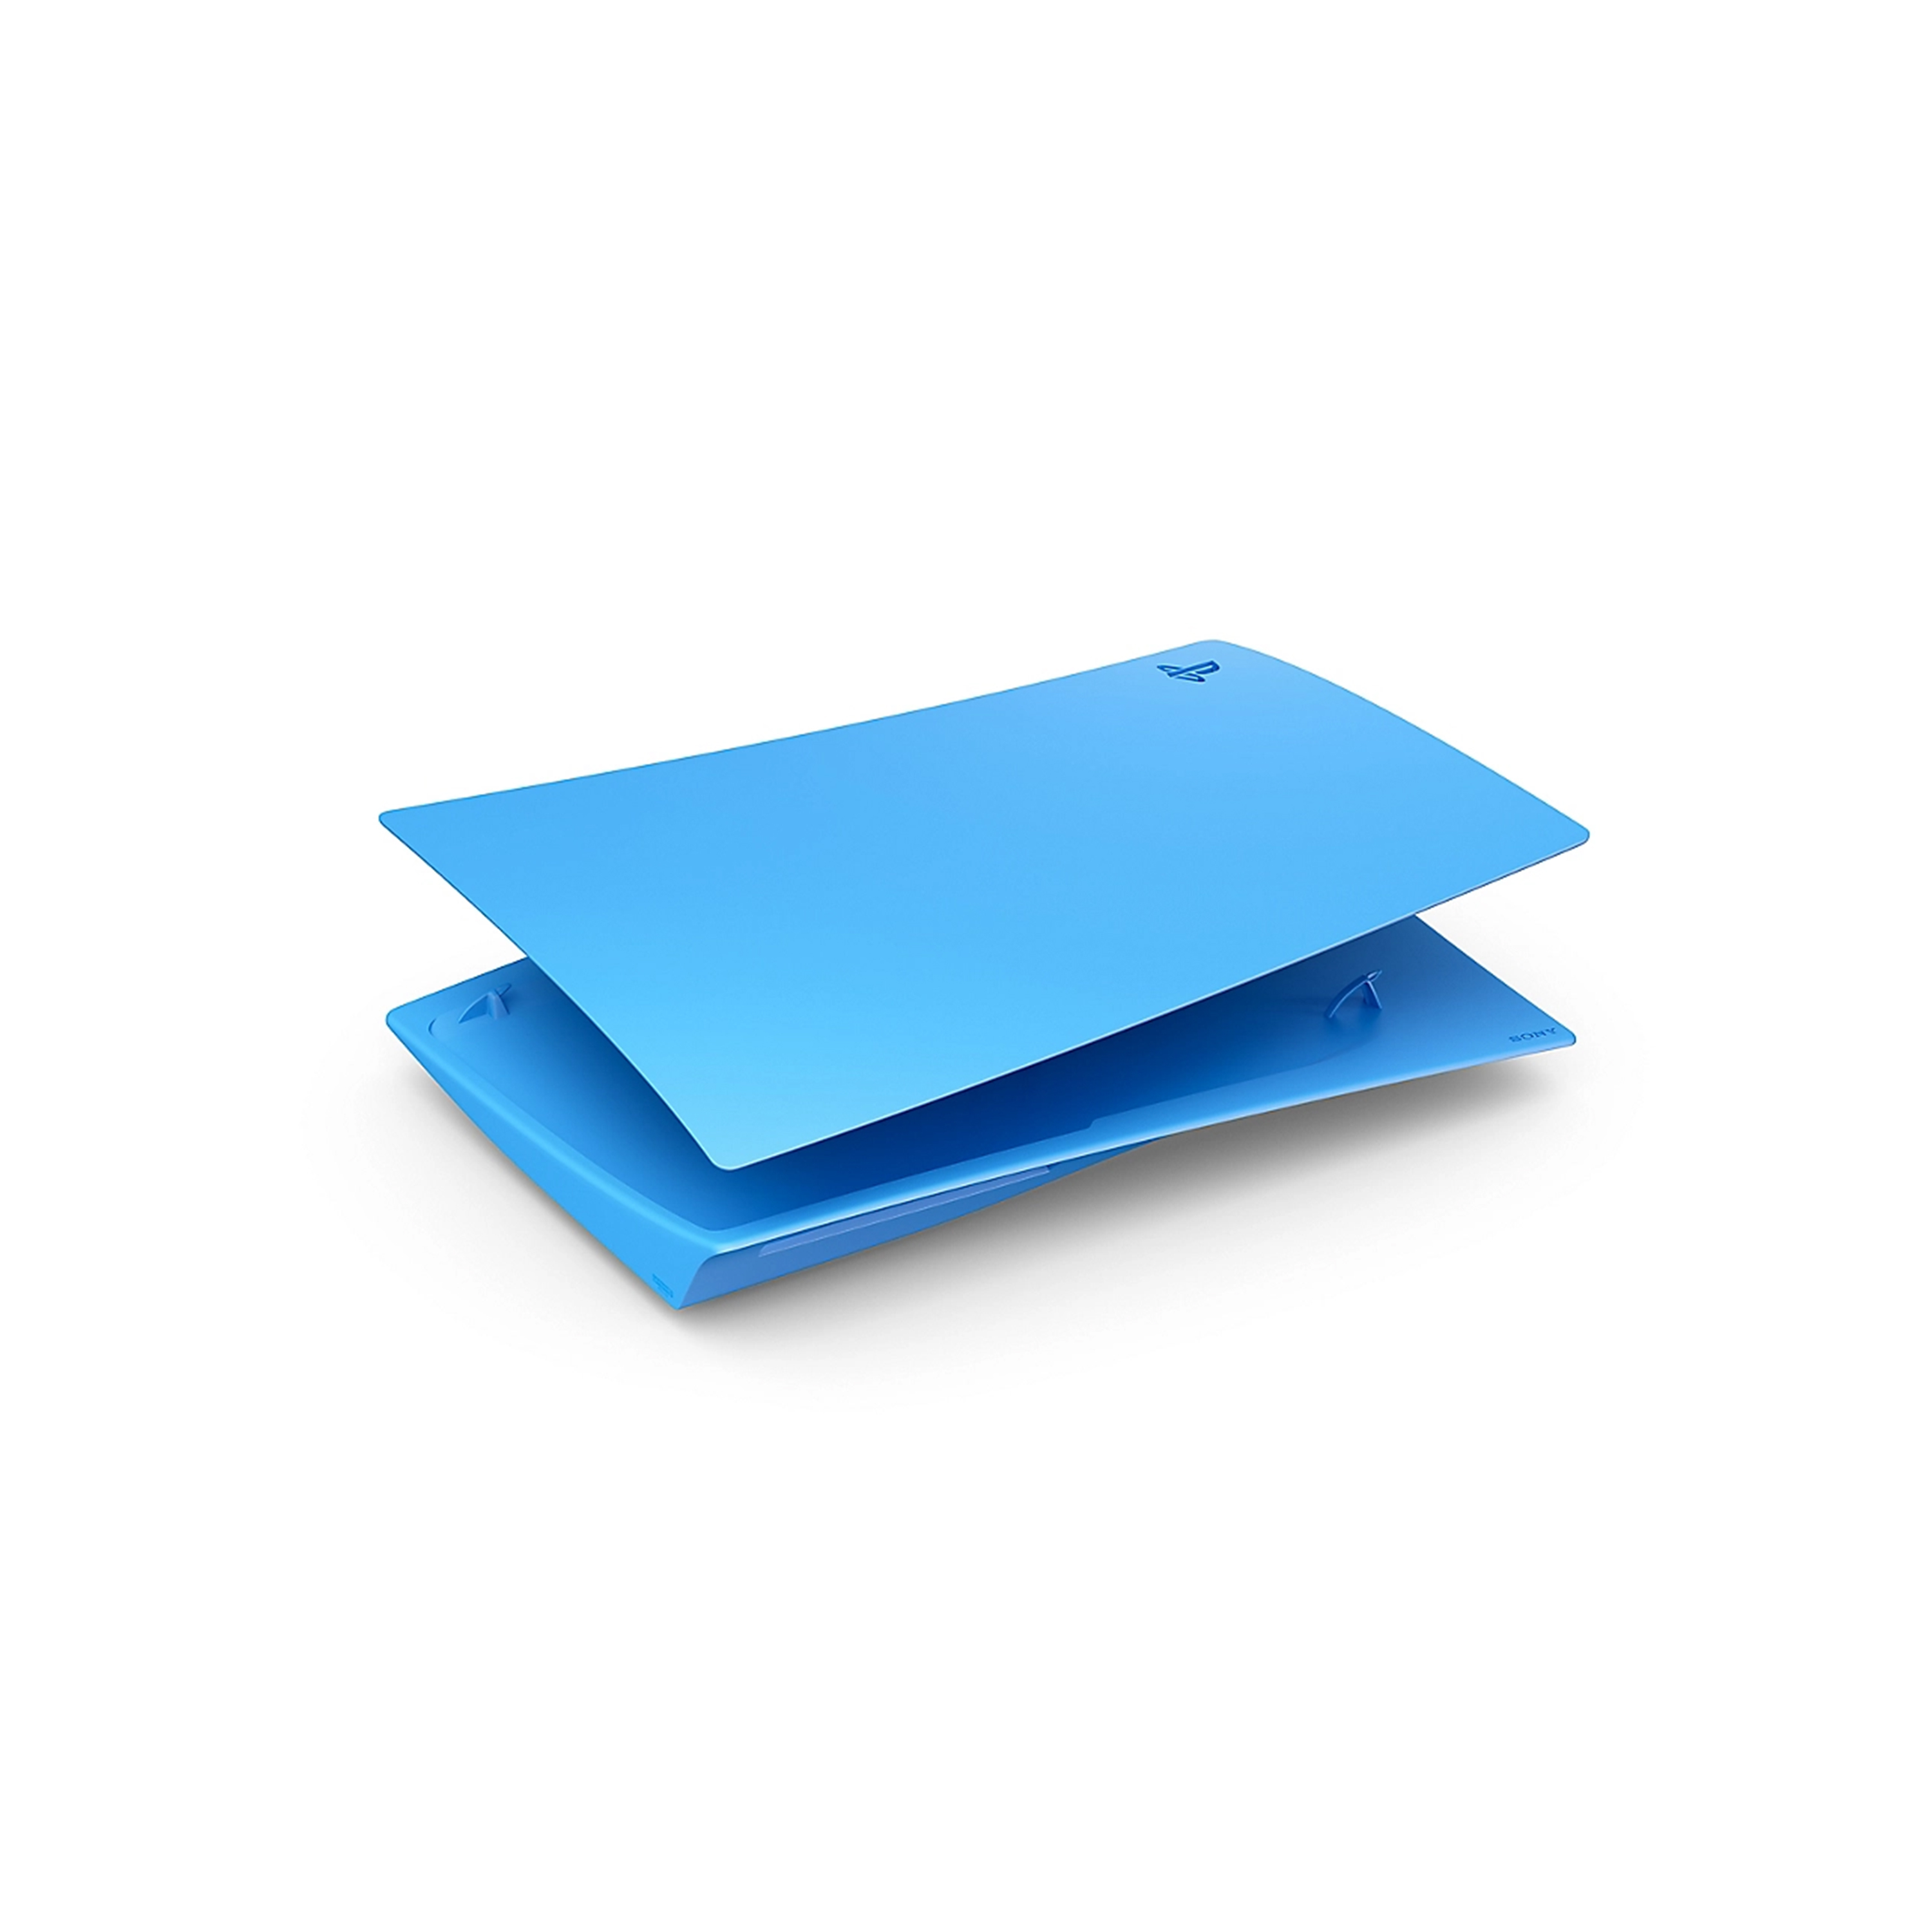 星光藍PlayStationR5 光碟版主機護蓋平放圖